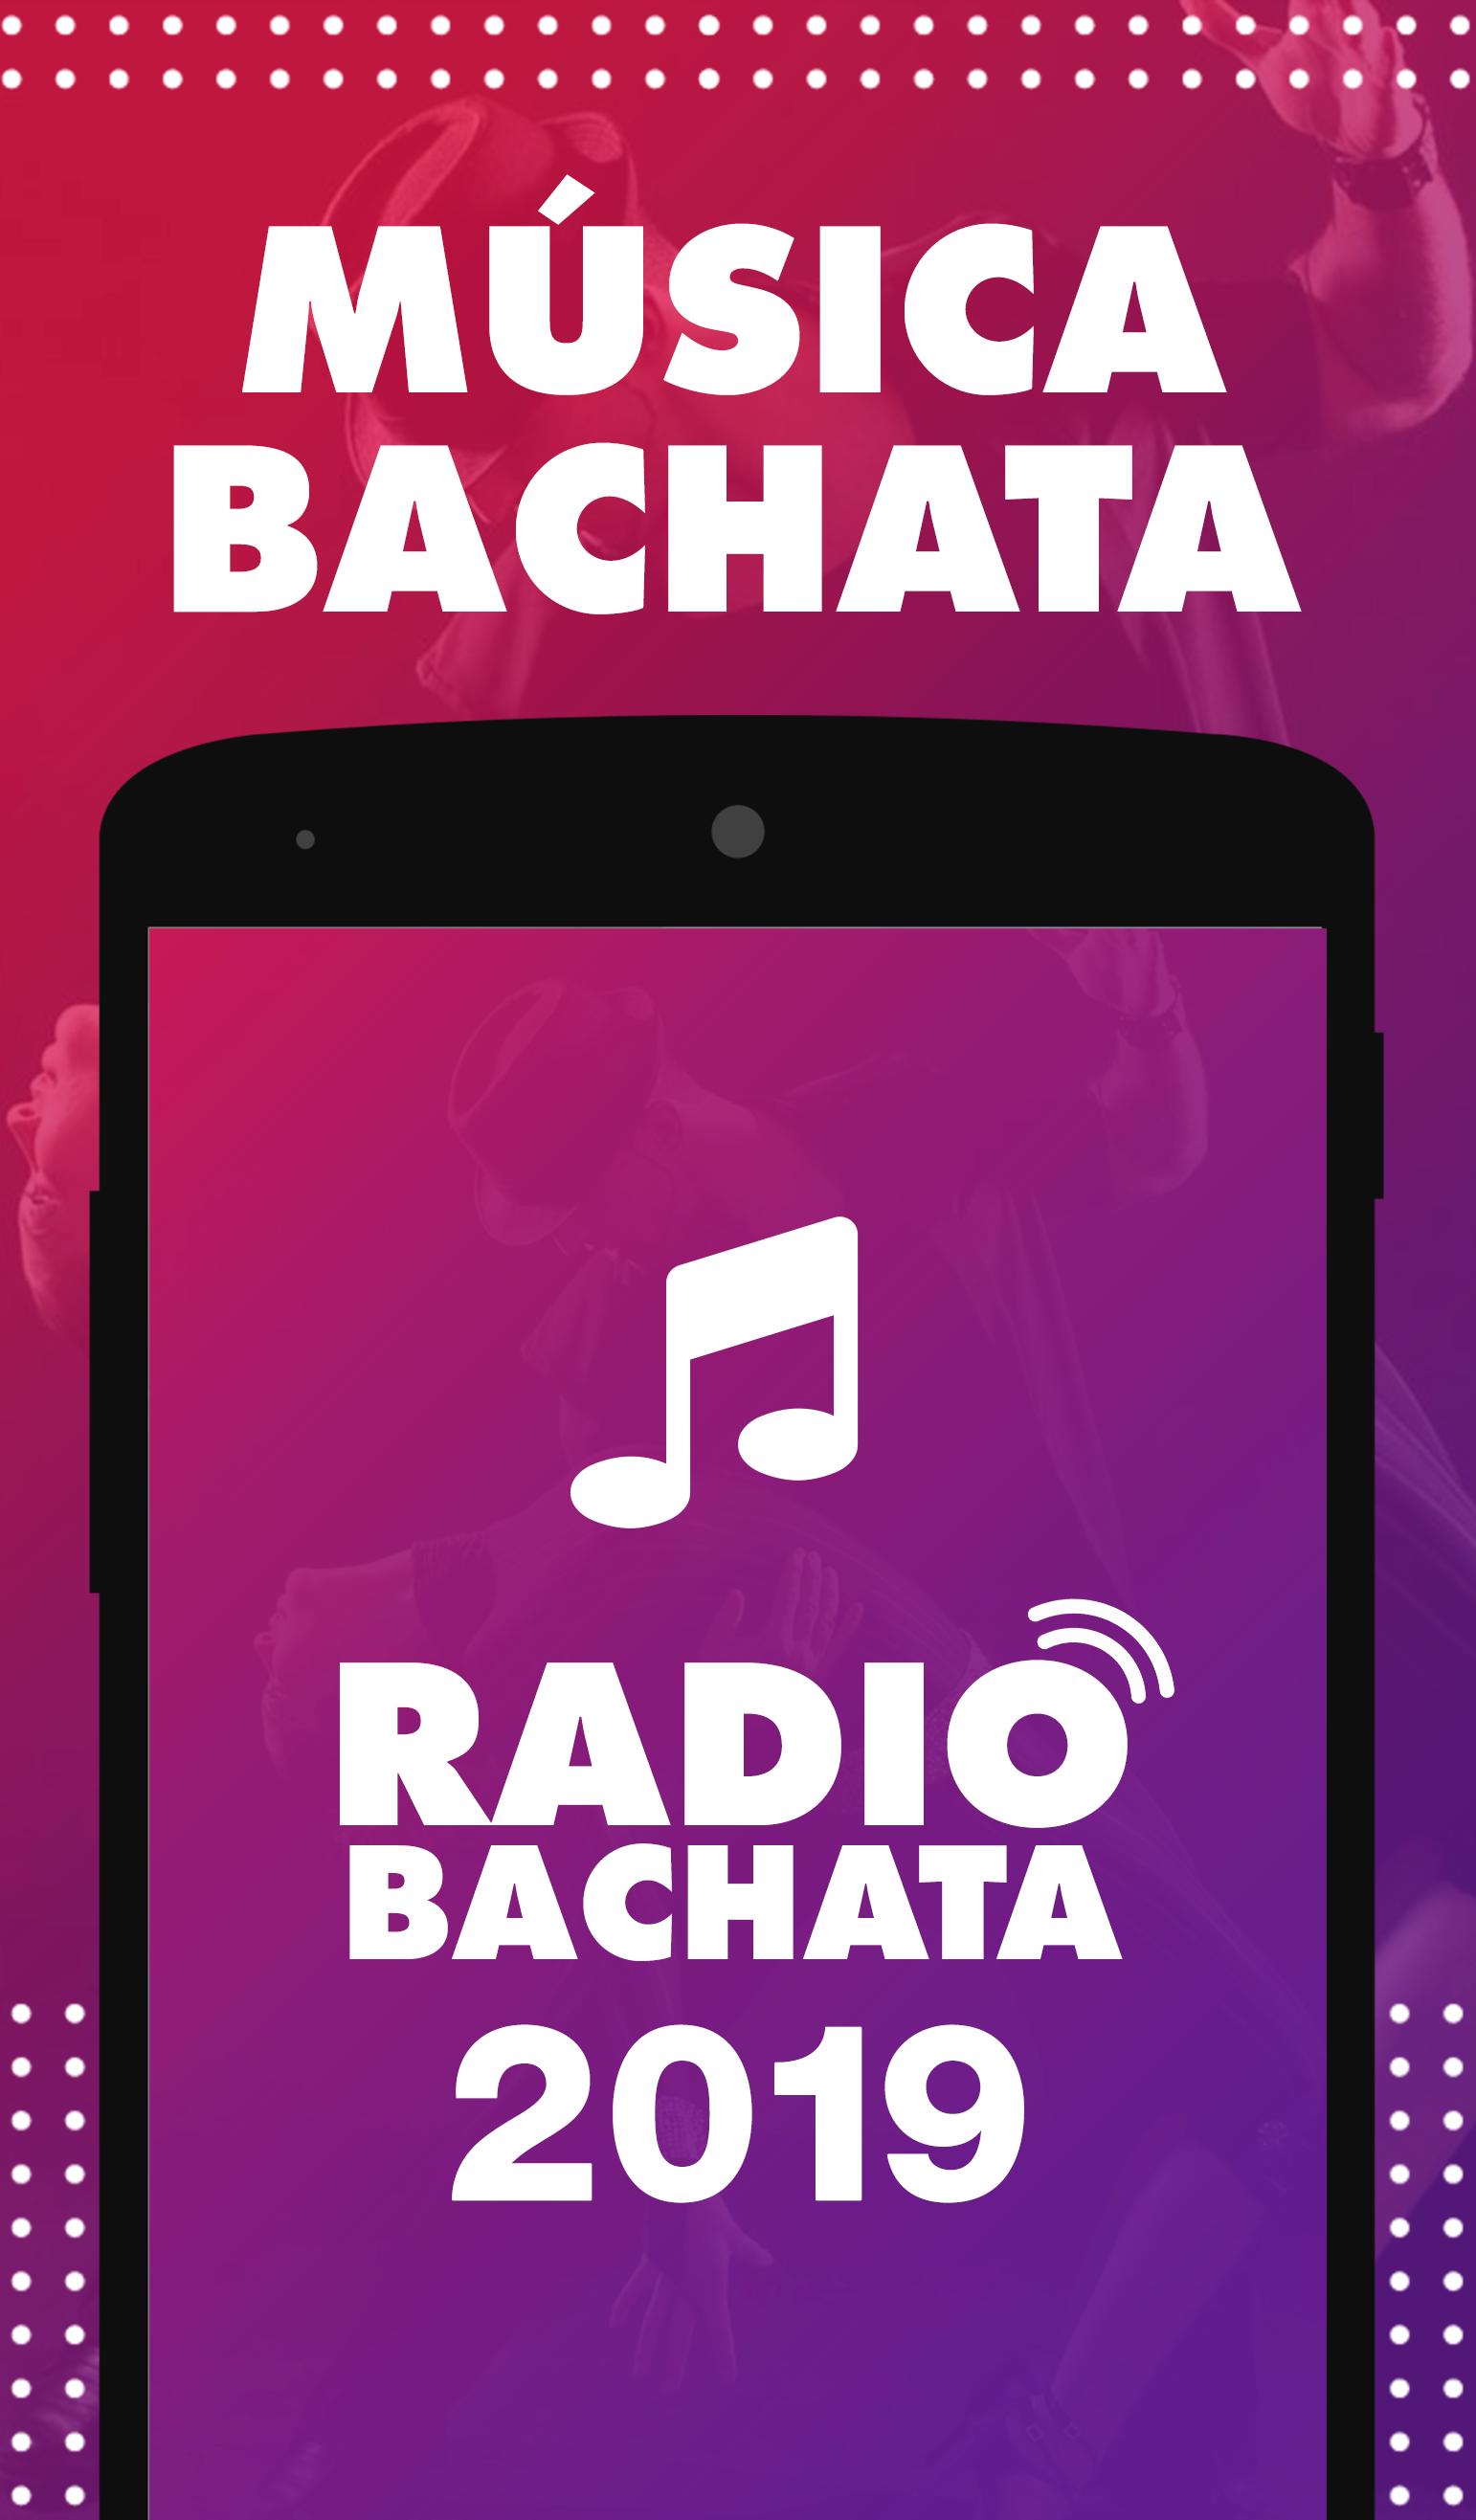 Radio Bachata - Emisoras de Música Gratis AM y FM APK pour Android  Télécharger